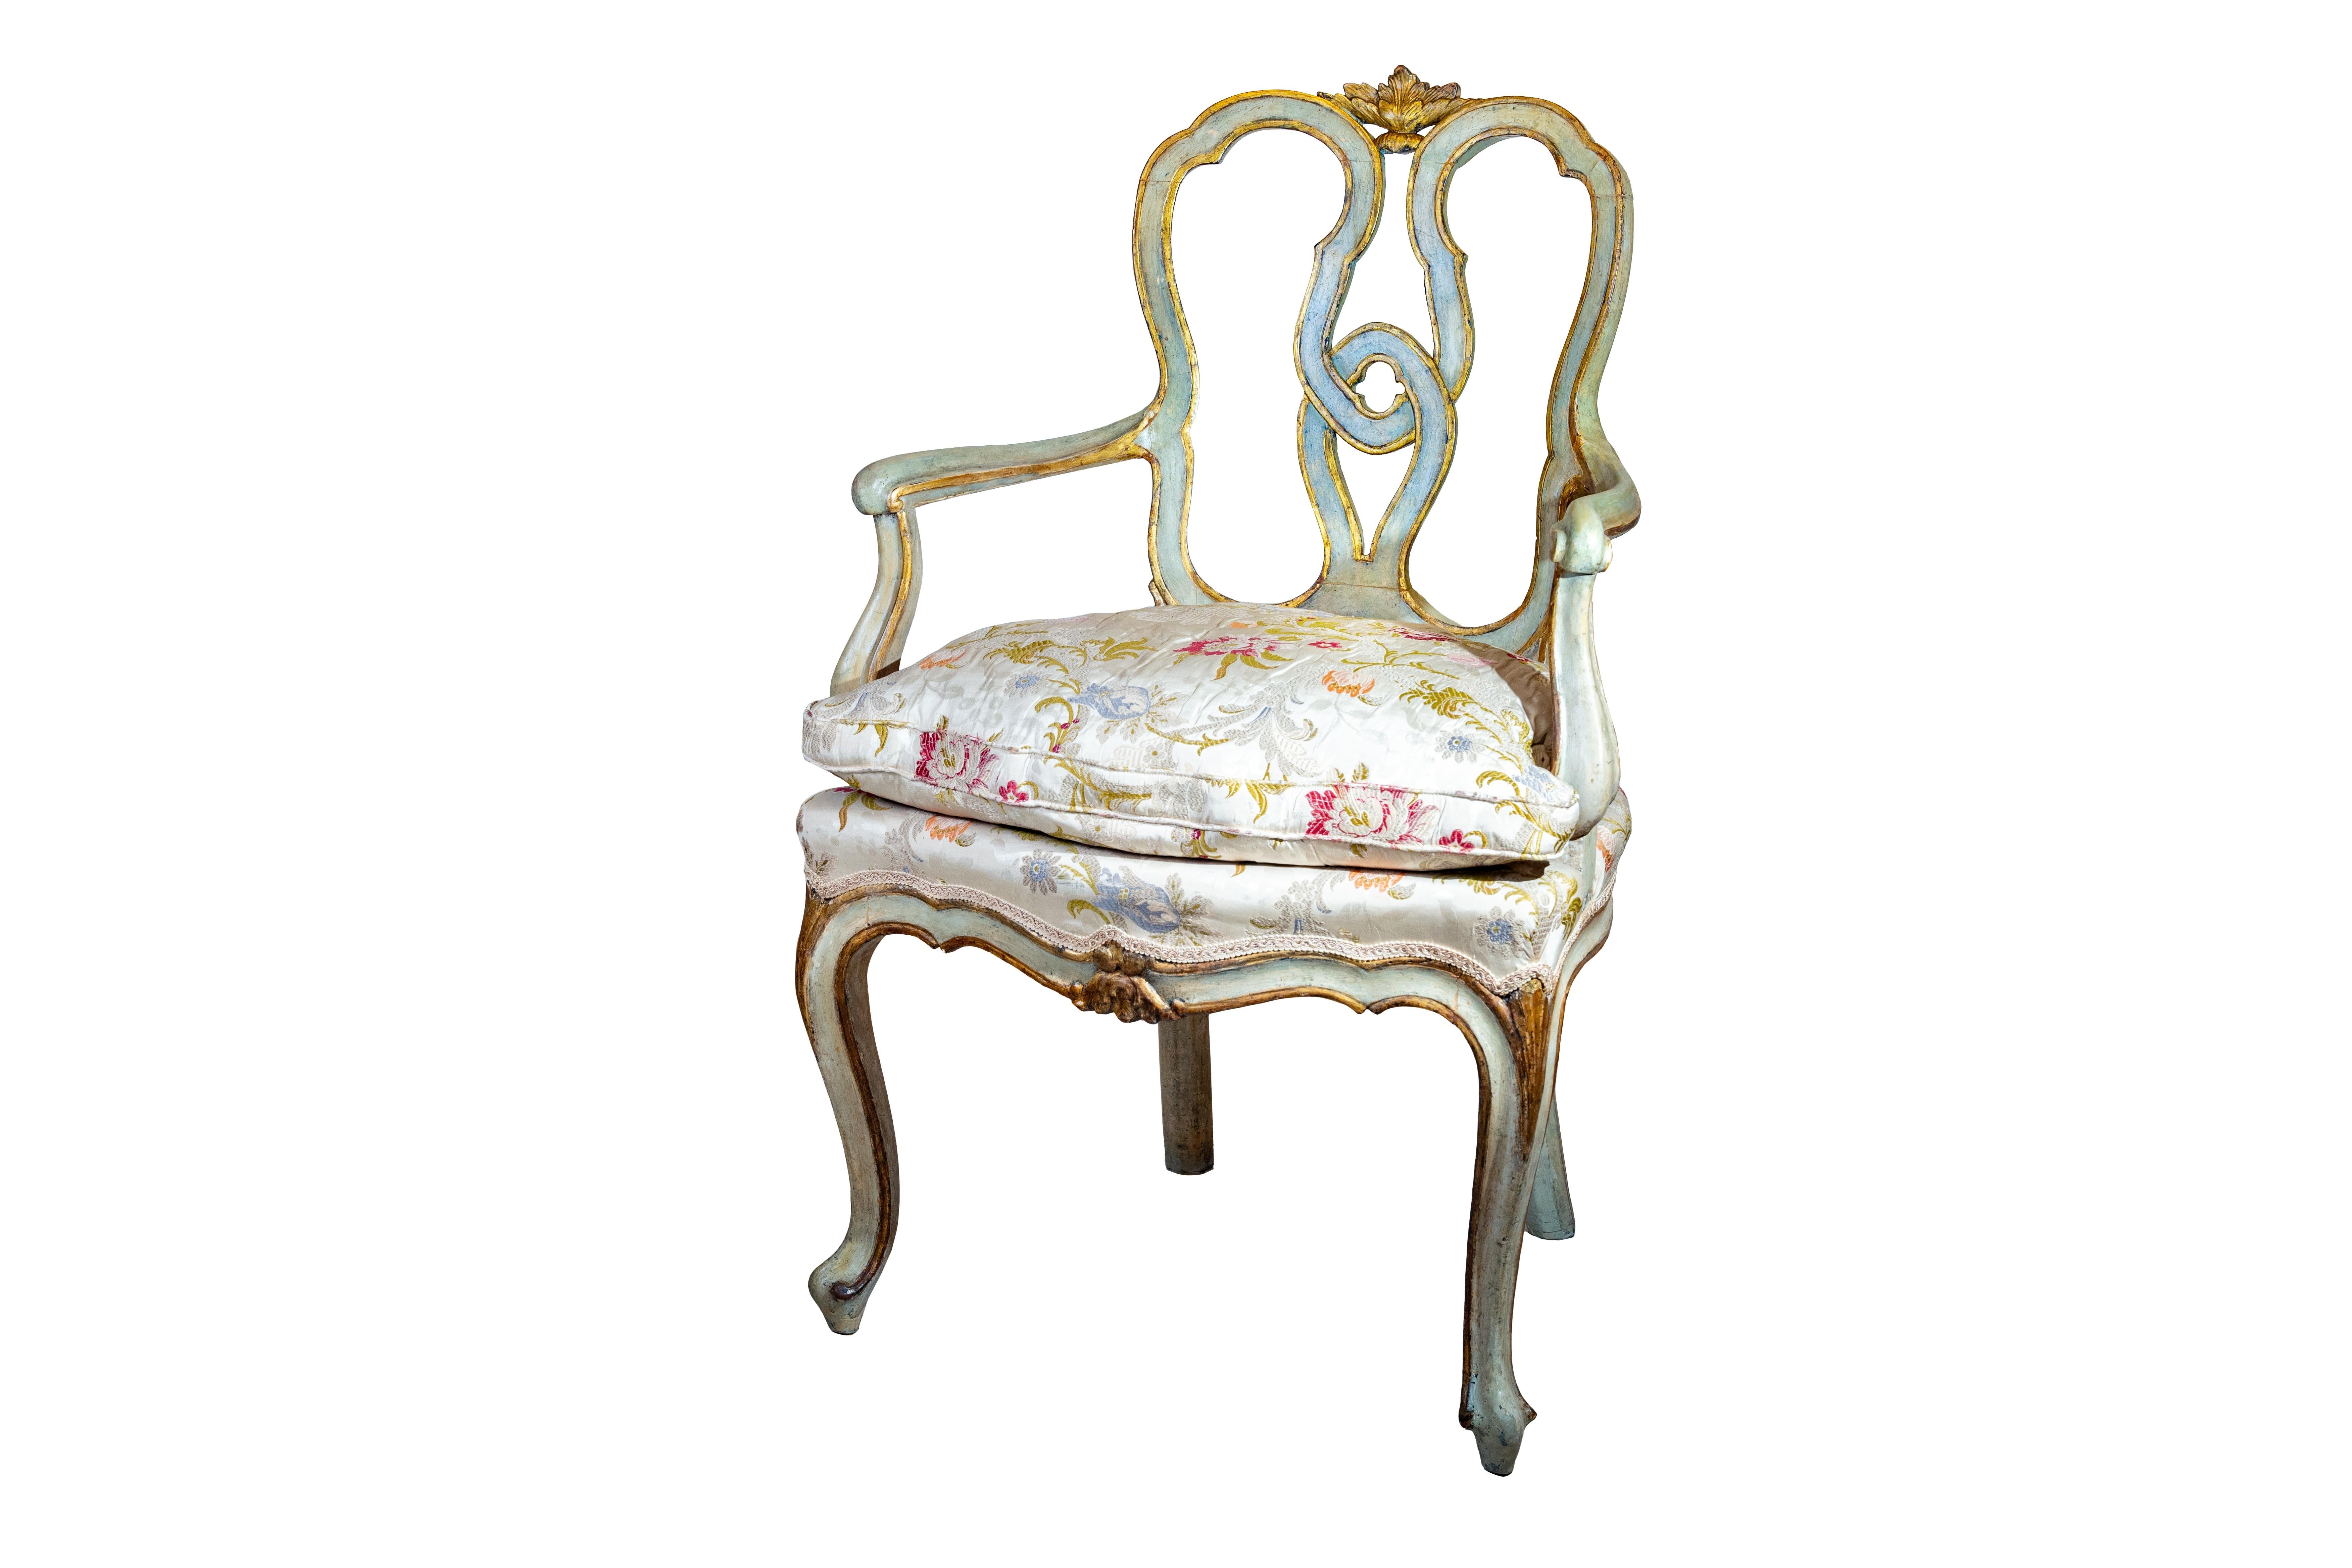 Cette paire raffinée et importante de fauteuils laqués a été fabriquée vers le milieu du XVIIIe siècle à Venise, en Italie. Ils sont réalisés en bois sculpté, laqué et doré et reflètent les règles stylistiques typiques du Louis XV vénitien.
Les